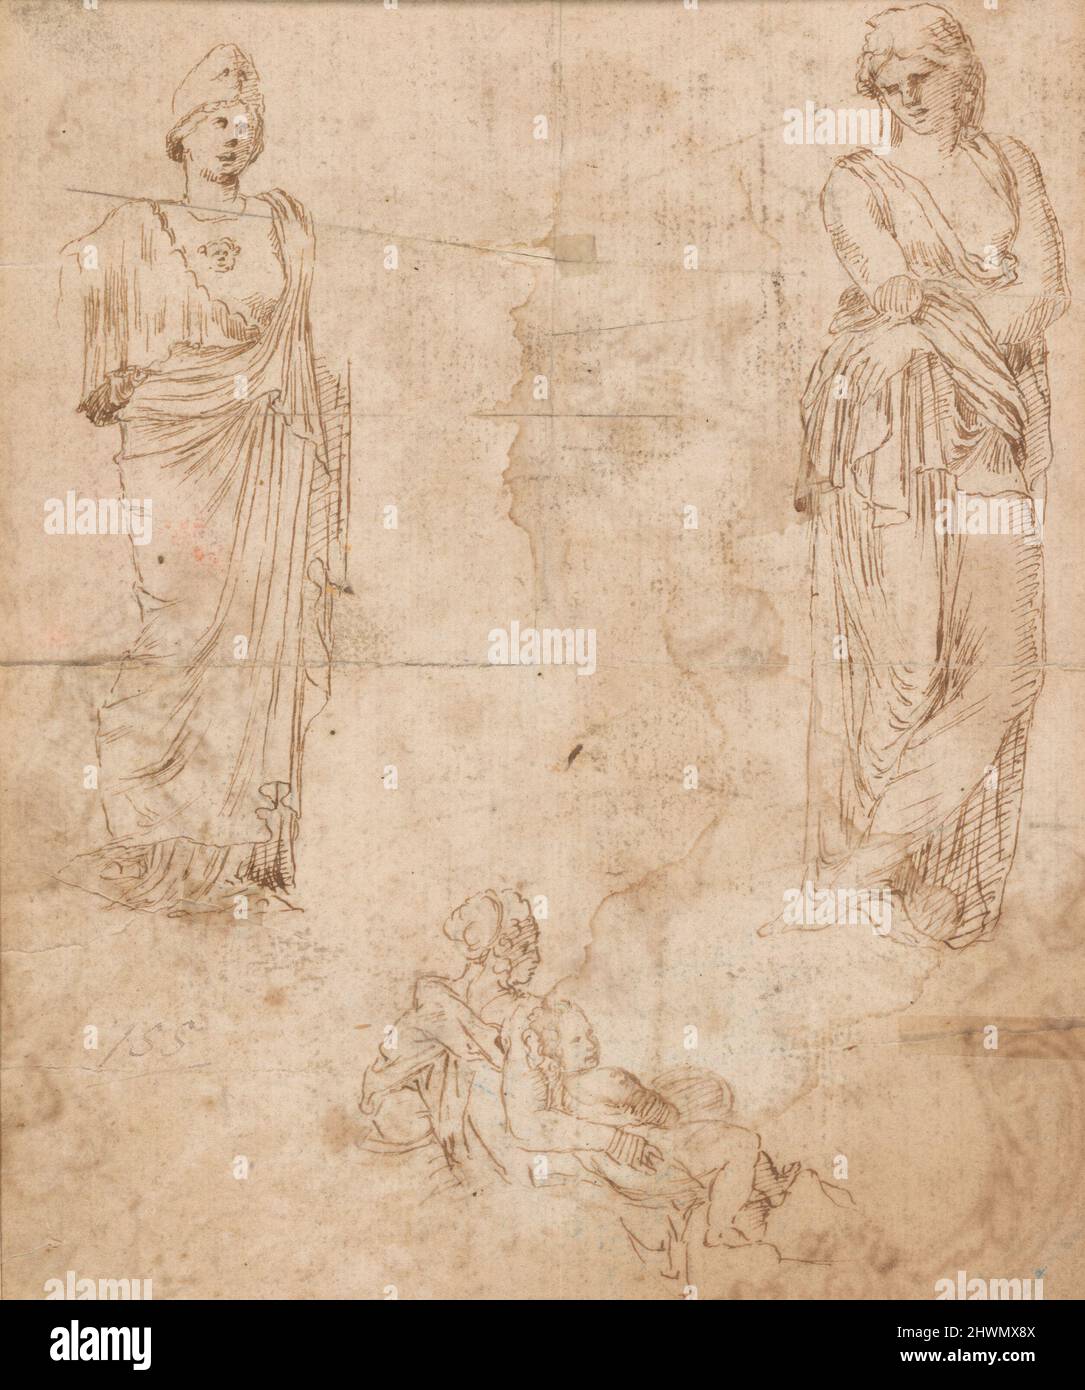 Studi di scultura antica (recto e verso). Artista, forse di: Girolamo da Carpi, italiano, 1501–1556 Foto Stock